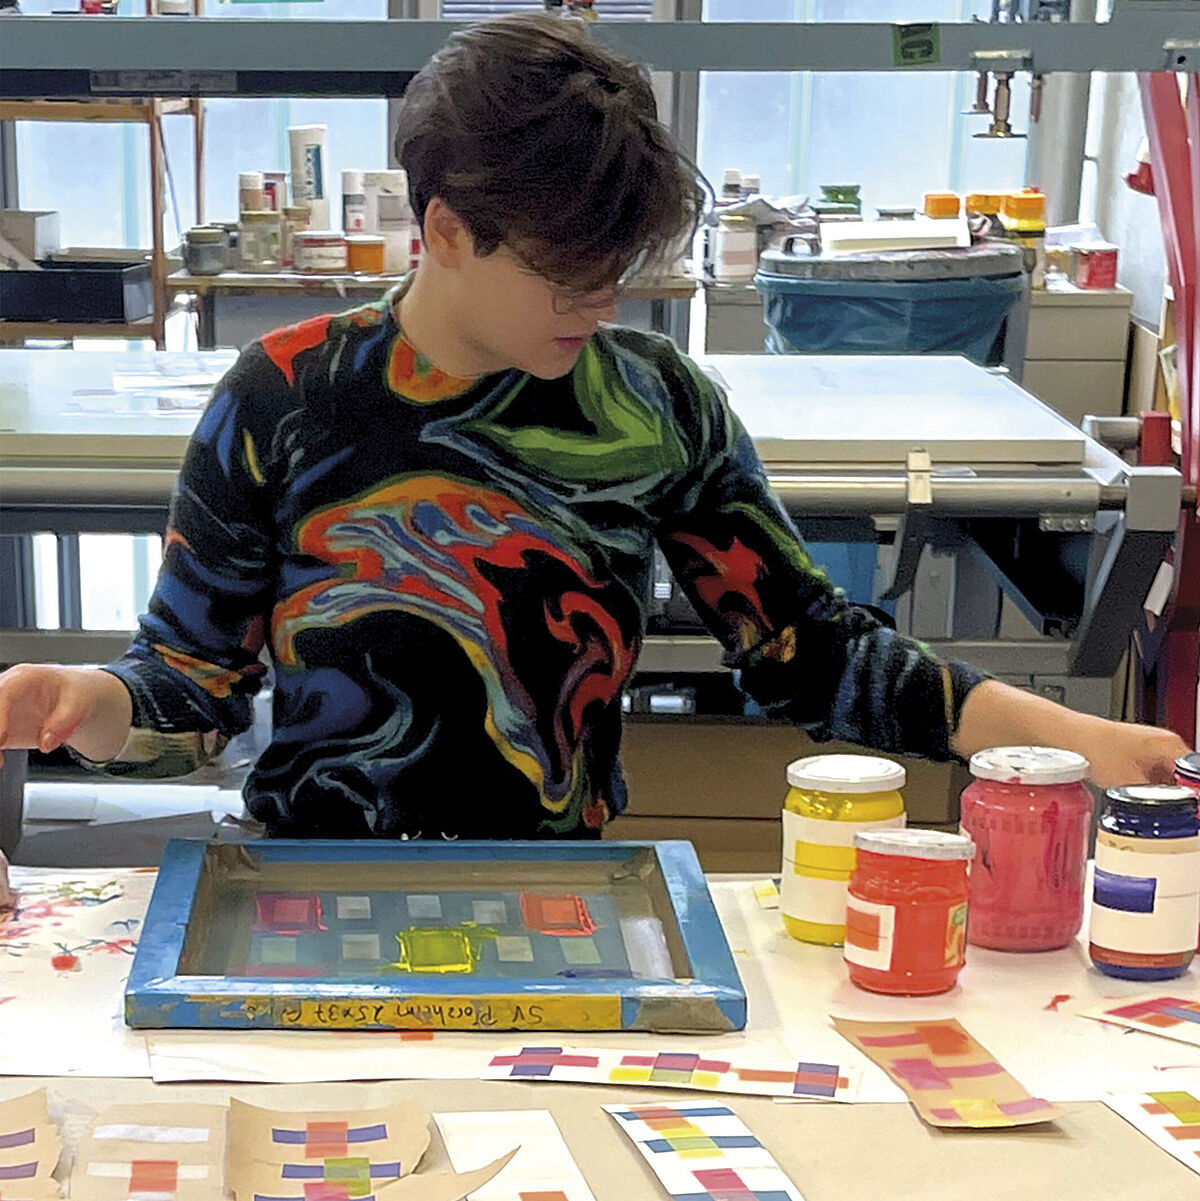 Eine Studentin, die einen butnen Pullover anhat, sitzt hinter einem großem Tisch in einem Atelier. Vor ihr liegen Papierstreifen mit verschiedenen bunten Mustern. Sie greift nach Farbtöpfen.